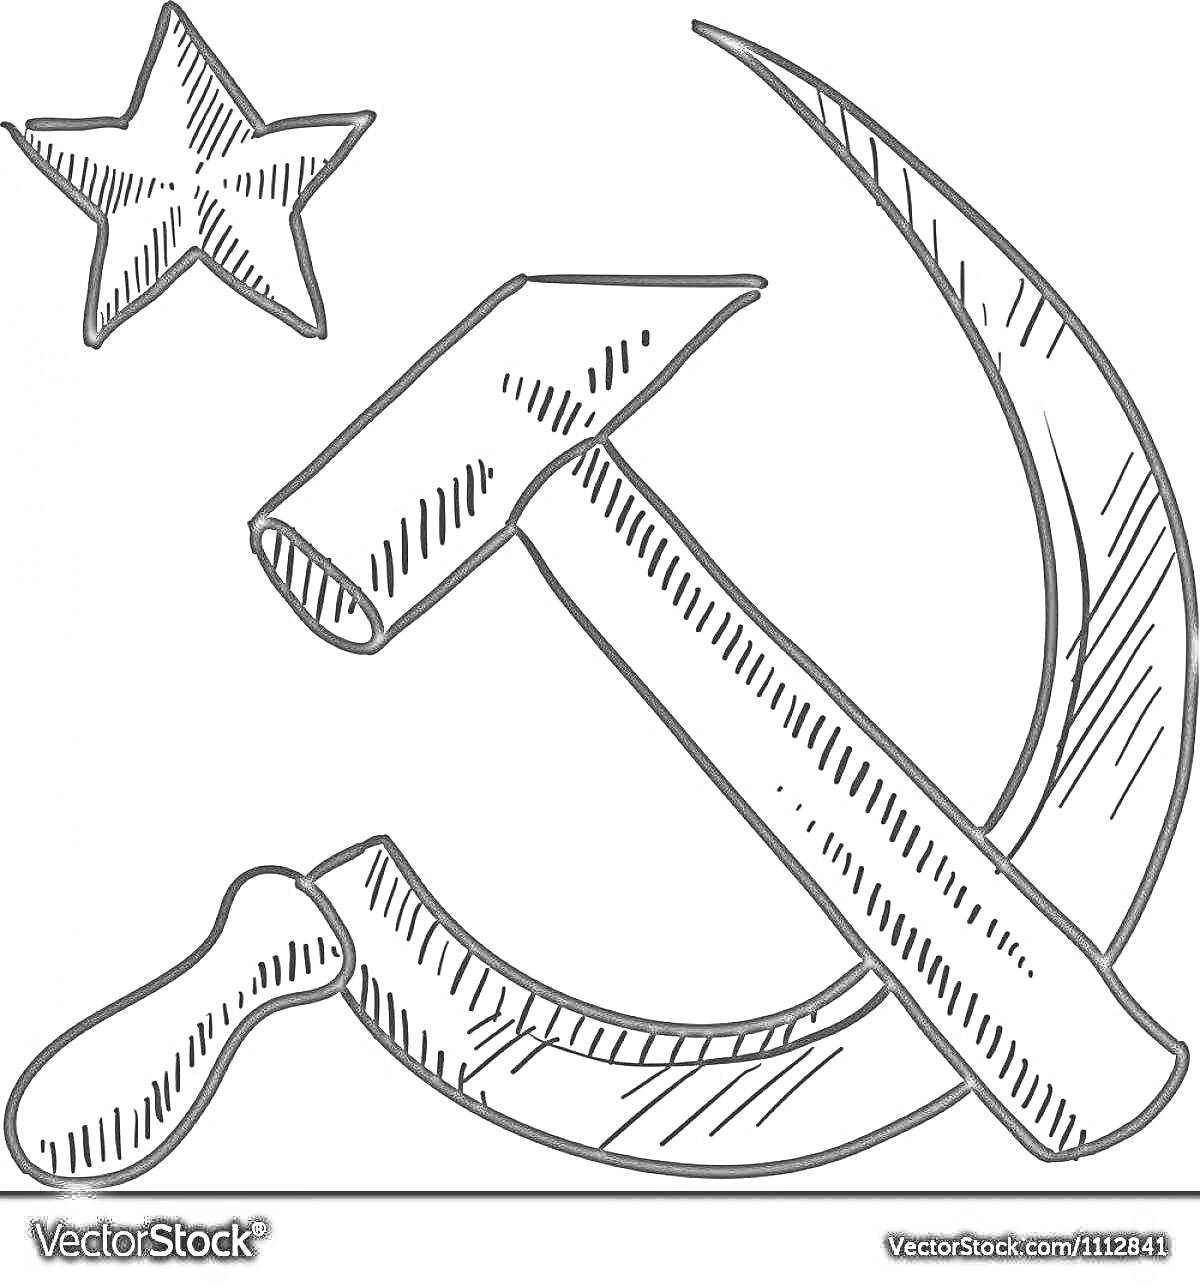 Раскраска Пятиконечная звезда и серп с молотом на флаге СССР